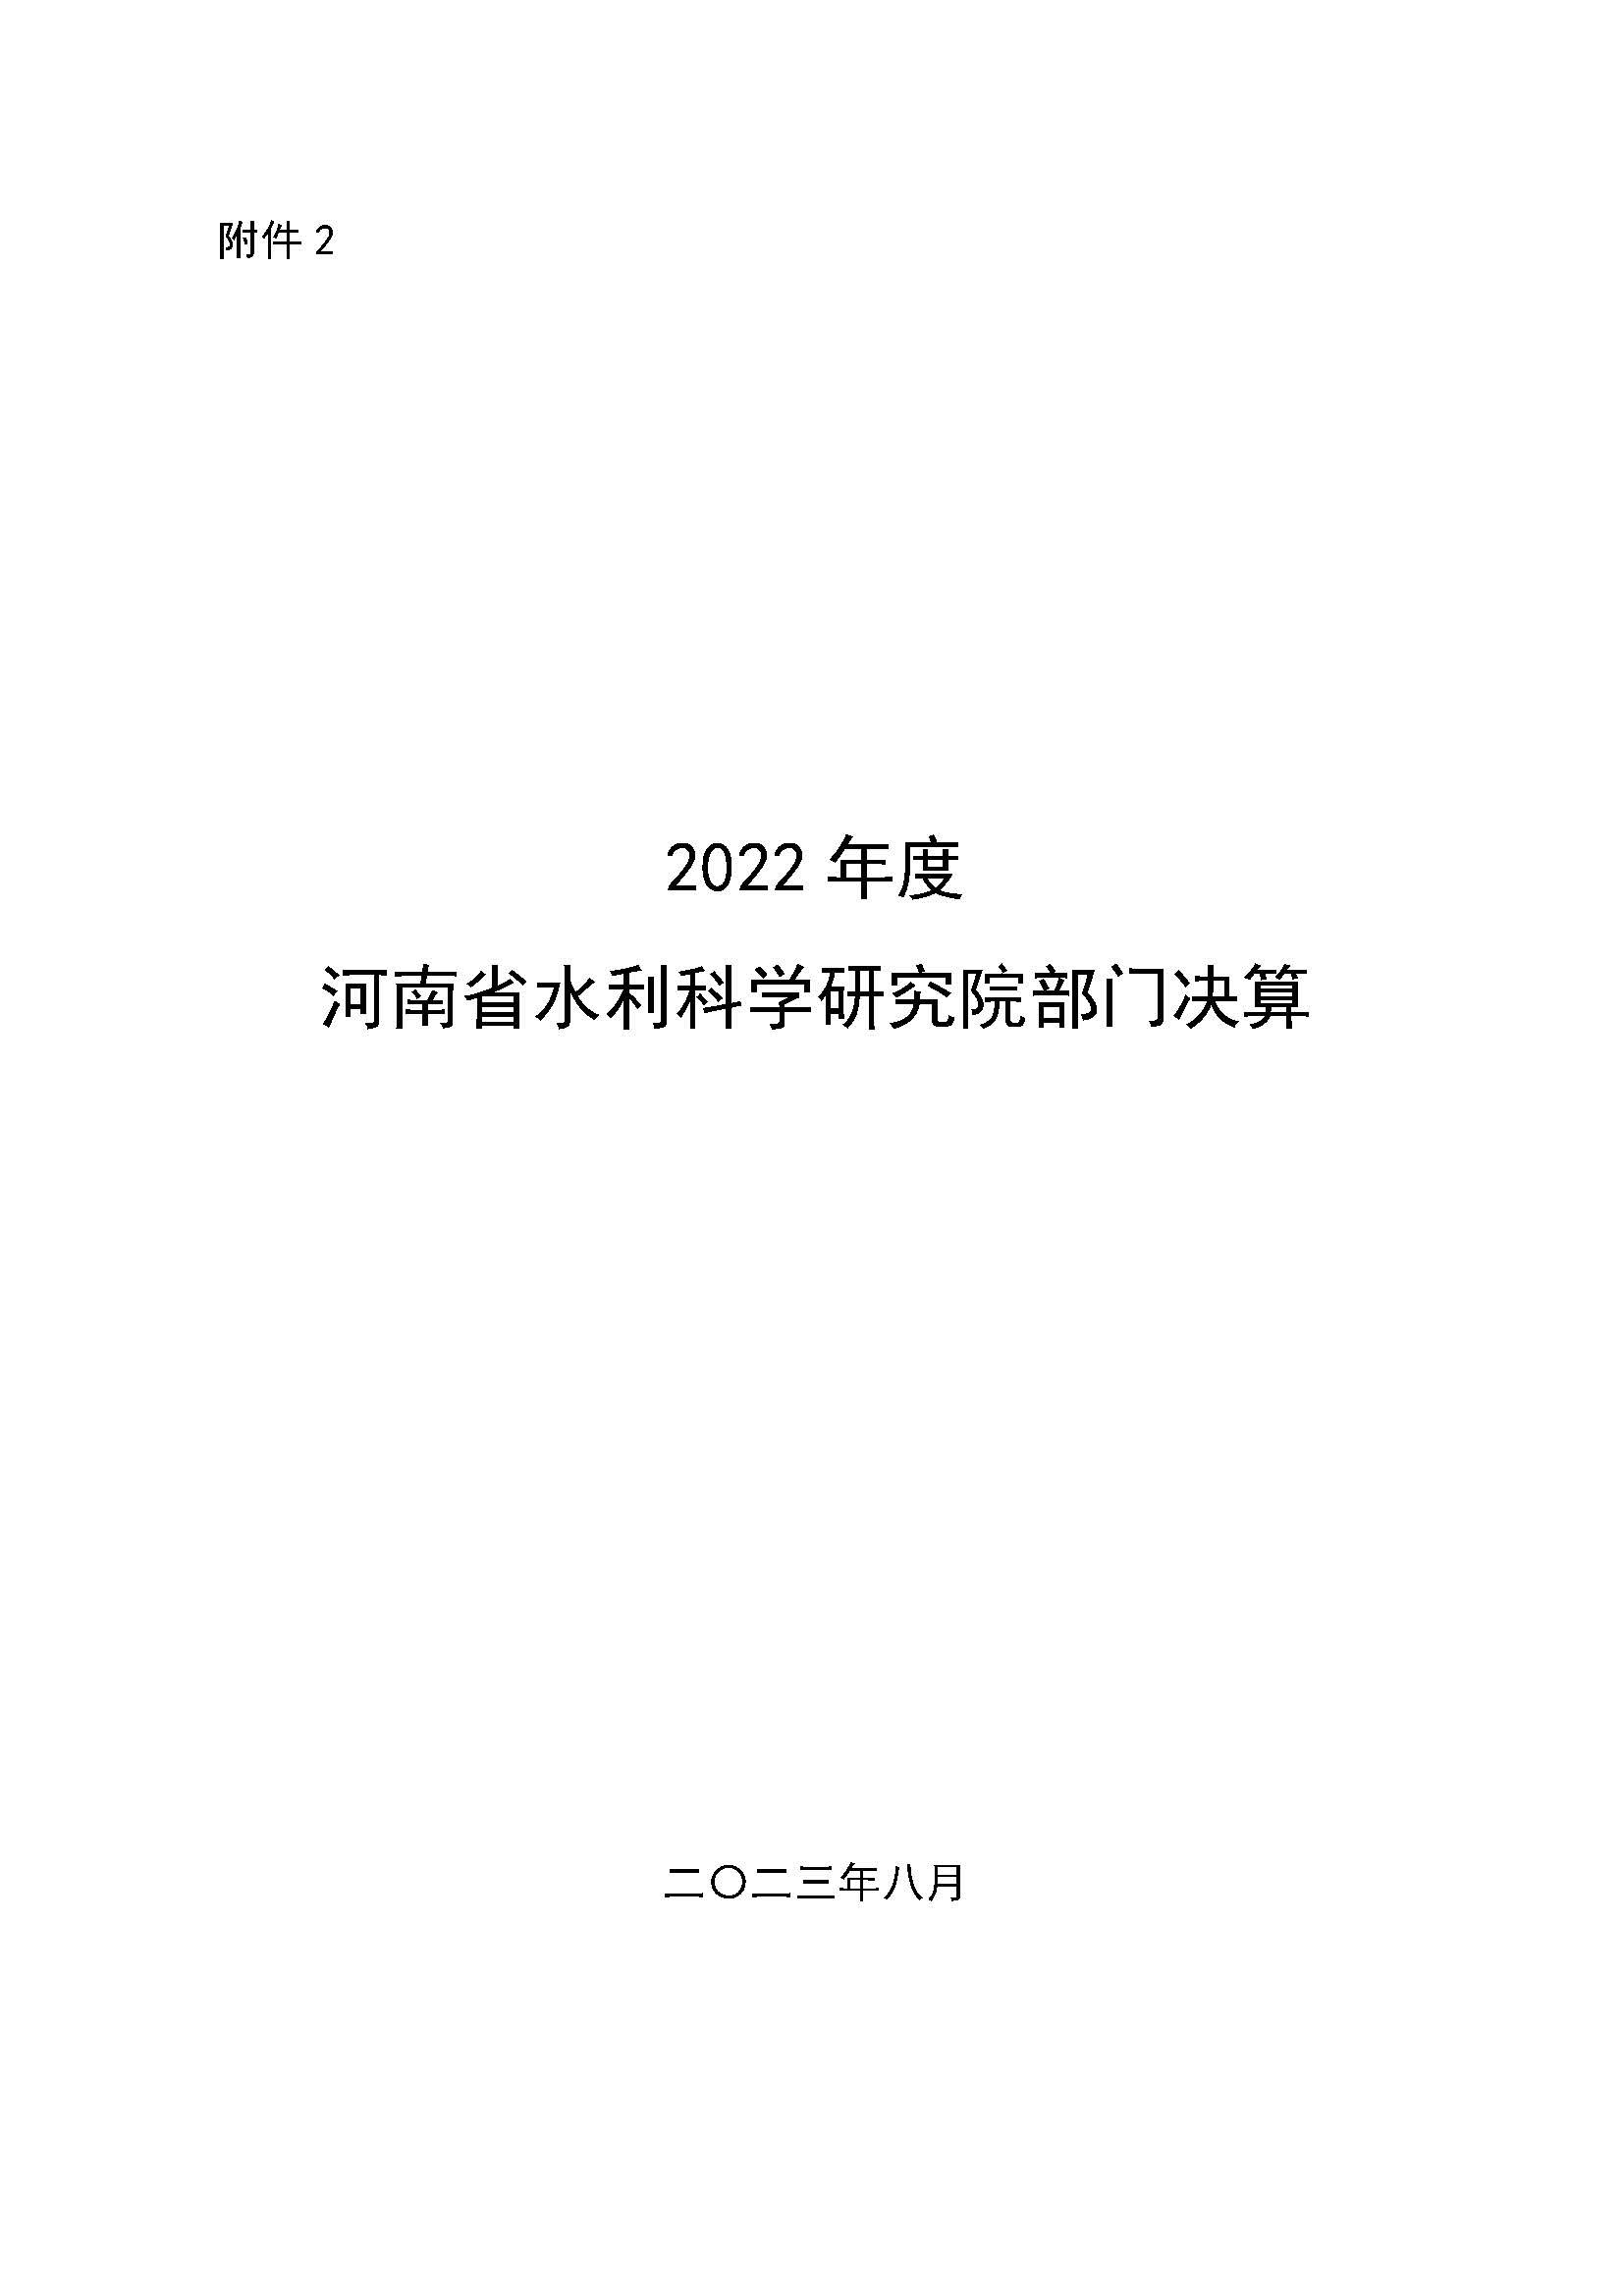 河南省水利科学研究院2022年年度省直部门决算公开(2)_页面_01.jpg